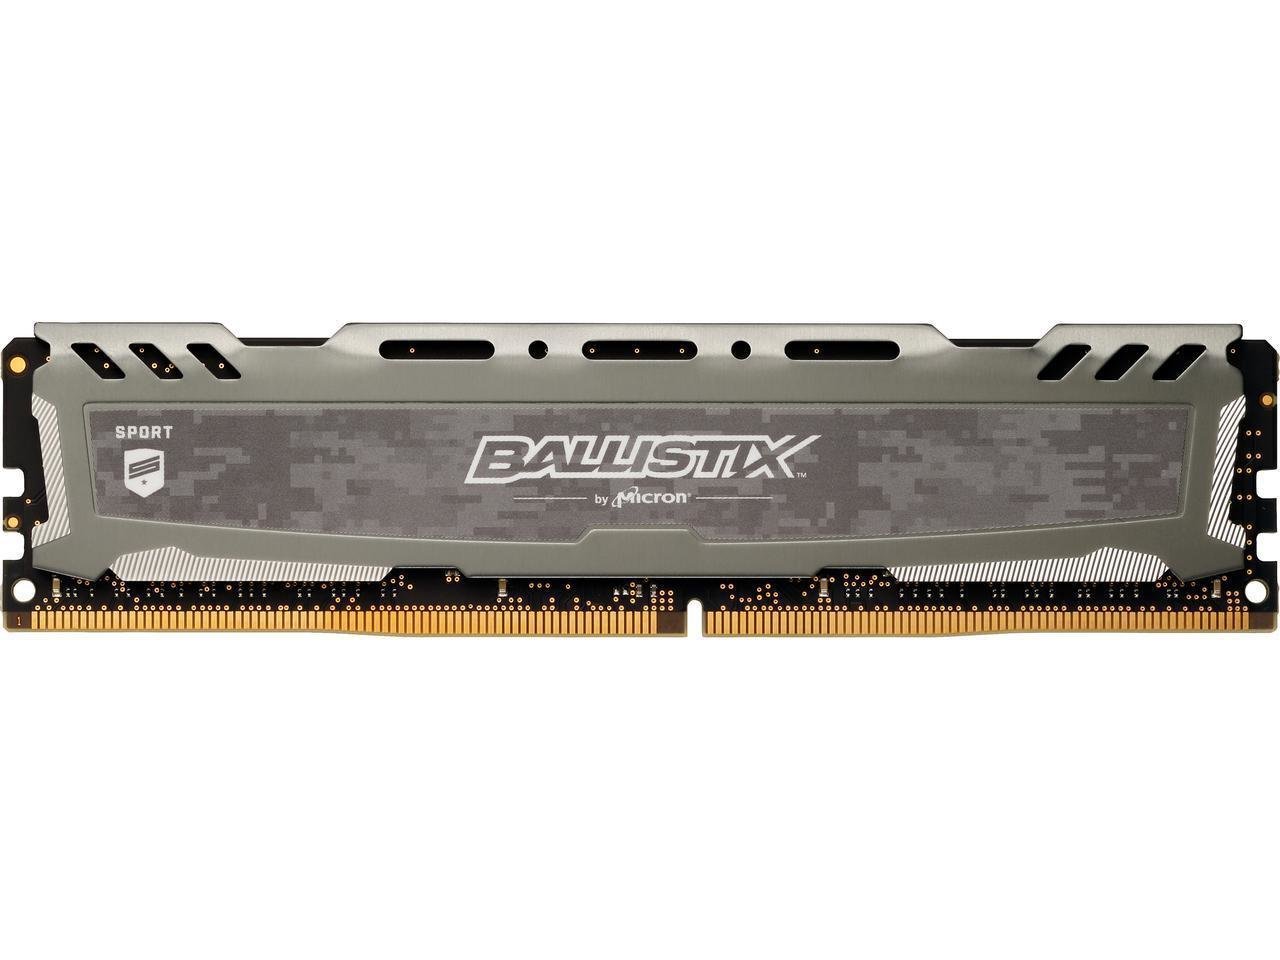 Ballistix Sport LT 8GB Single DDR4 2666 MT/s (PC4-21300) SR x8 DIMM 288-Pin Memory - BLS8G4D26BFSBK (Grey)